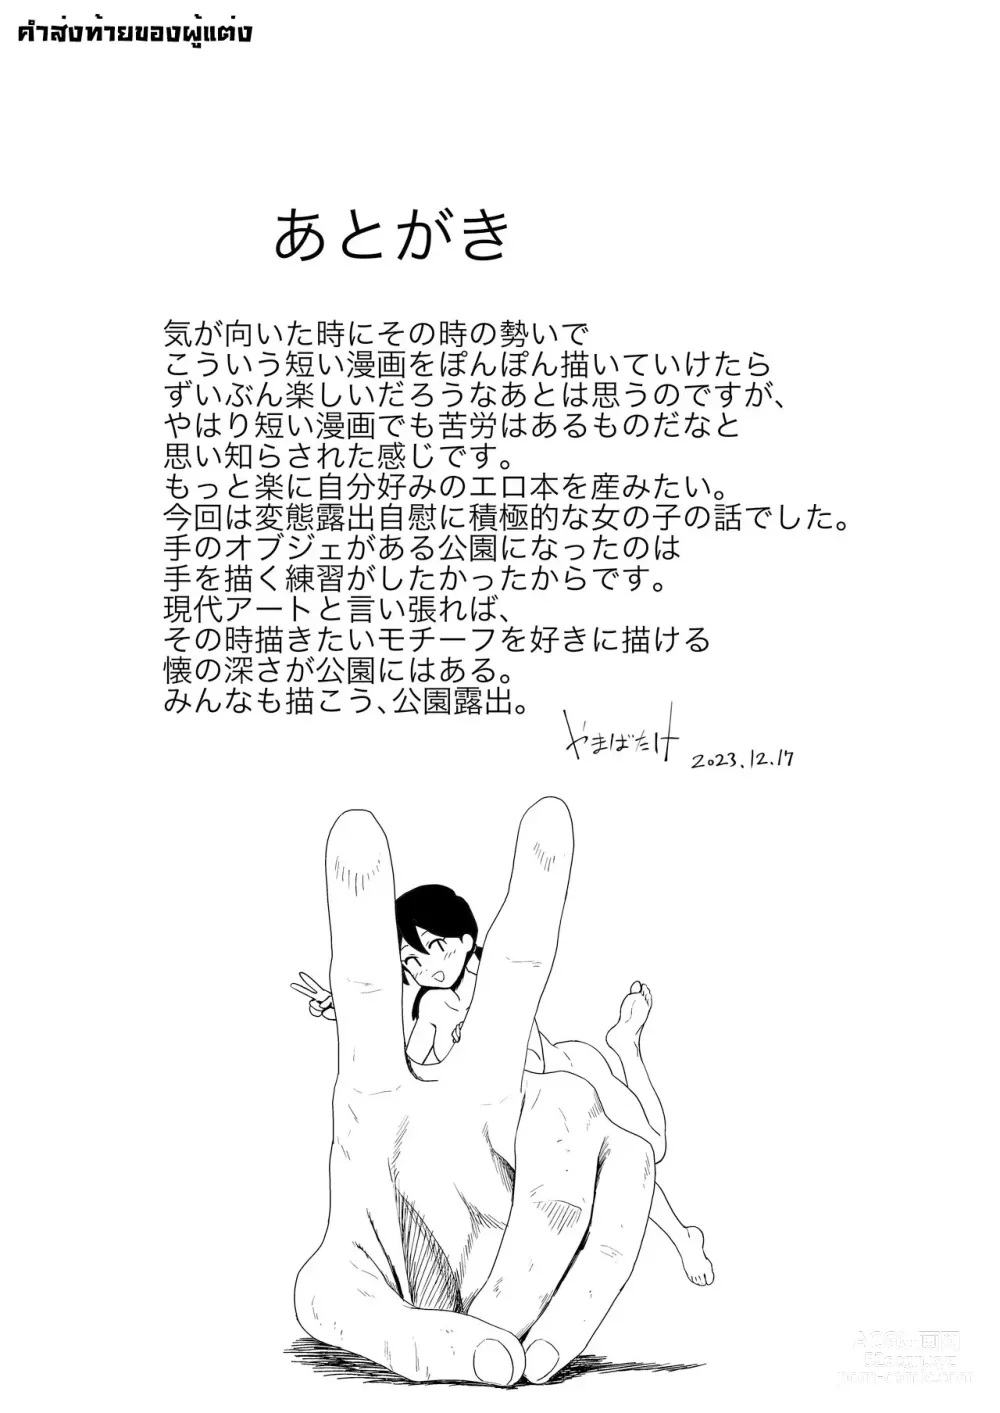 Page 21 of doujinshi Yoru, Kouen, Roshutsu Jii. l เรื่องเสวๆ, ที่สวนสาธารณะ, ในยามค่ำคืน